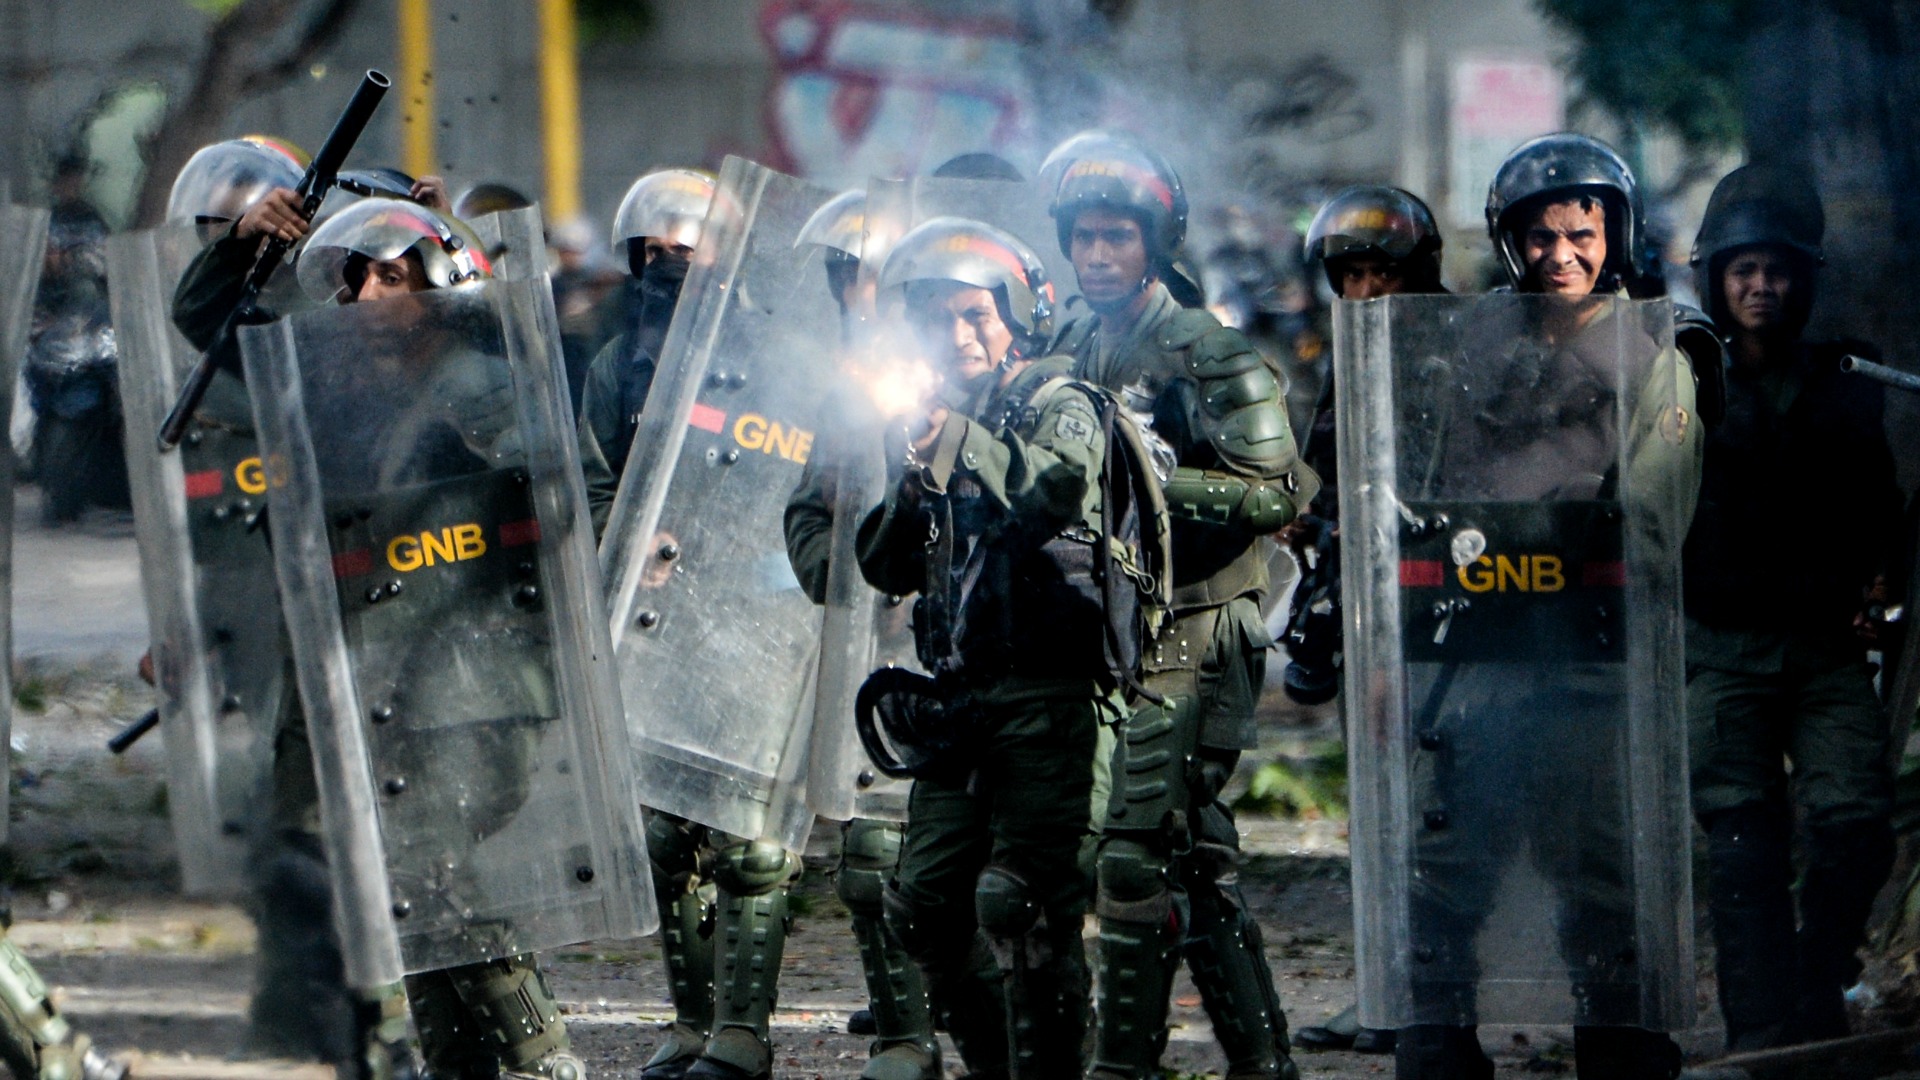 La ONU acusa a las fuerzas del orden venezolanas de tortura y malos tratos generalizados